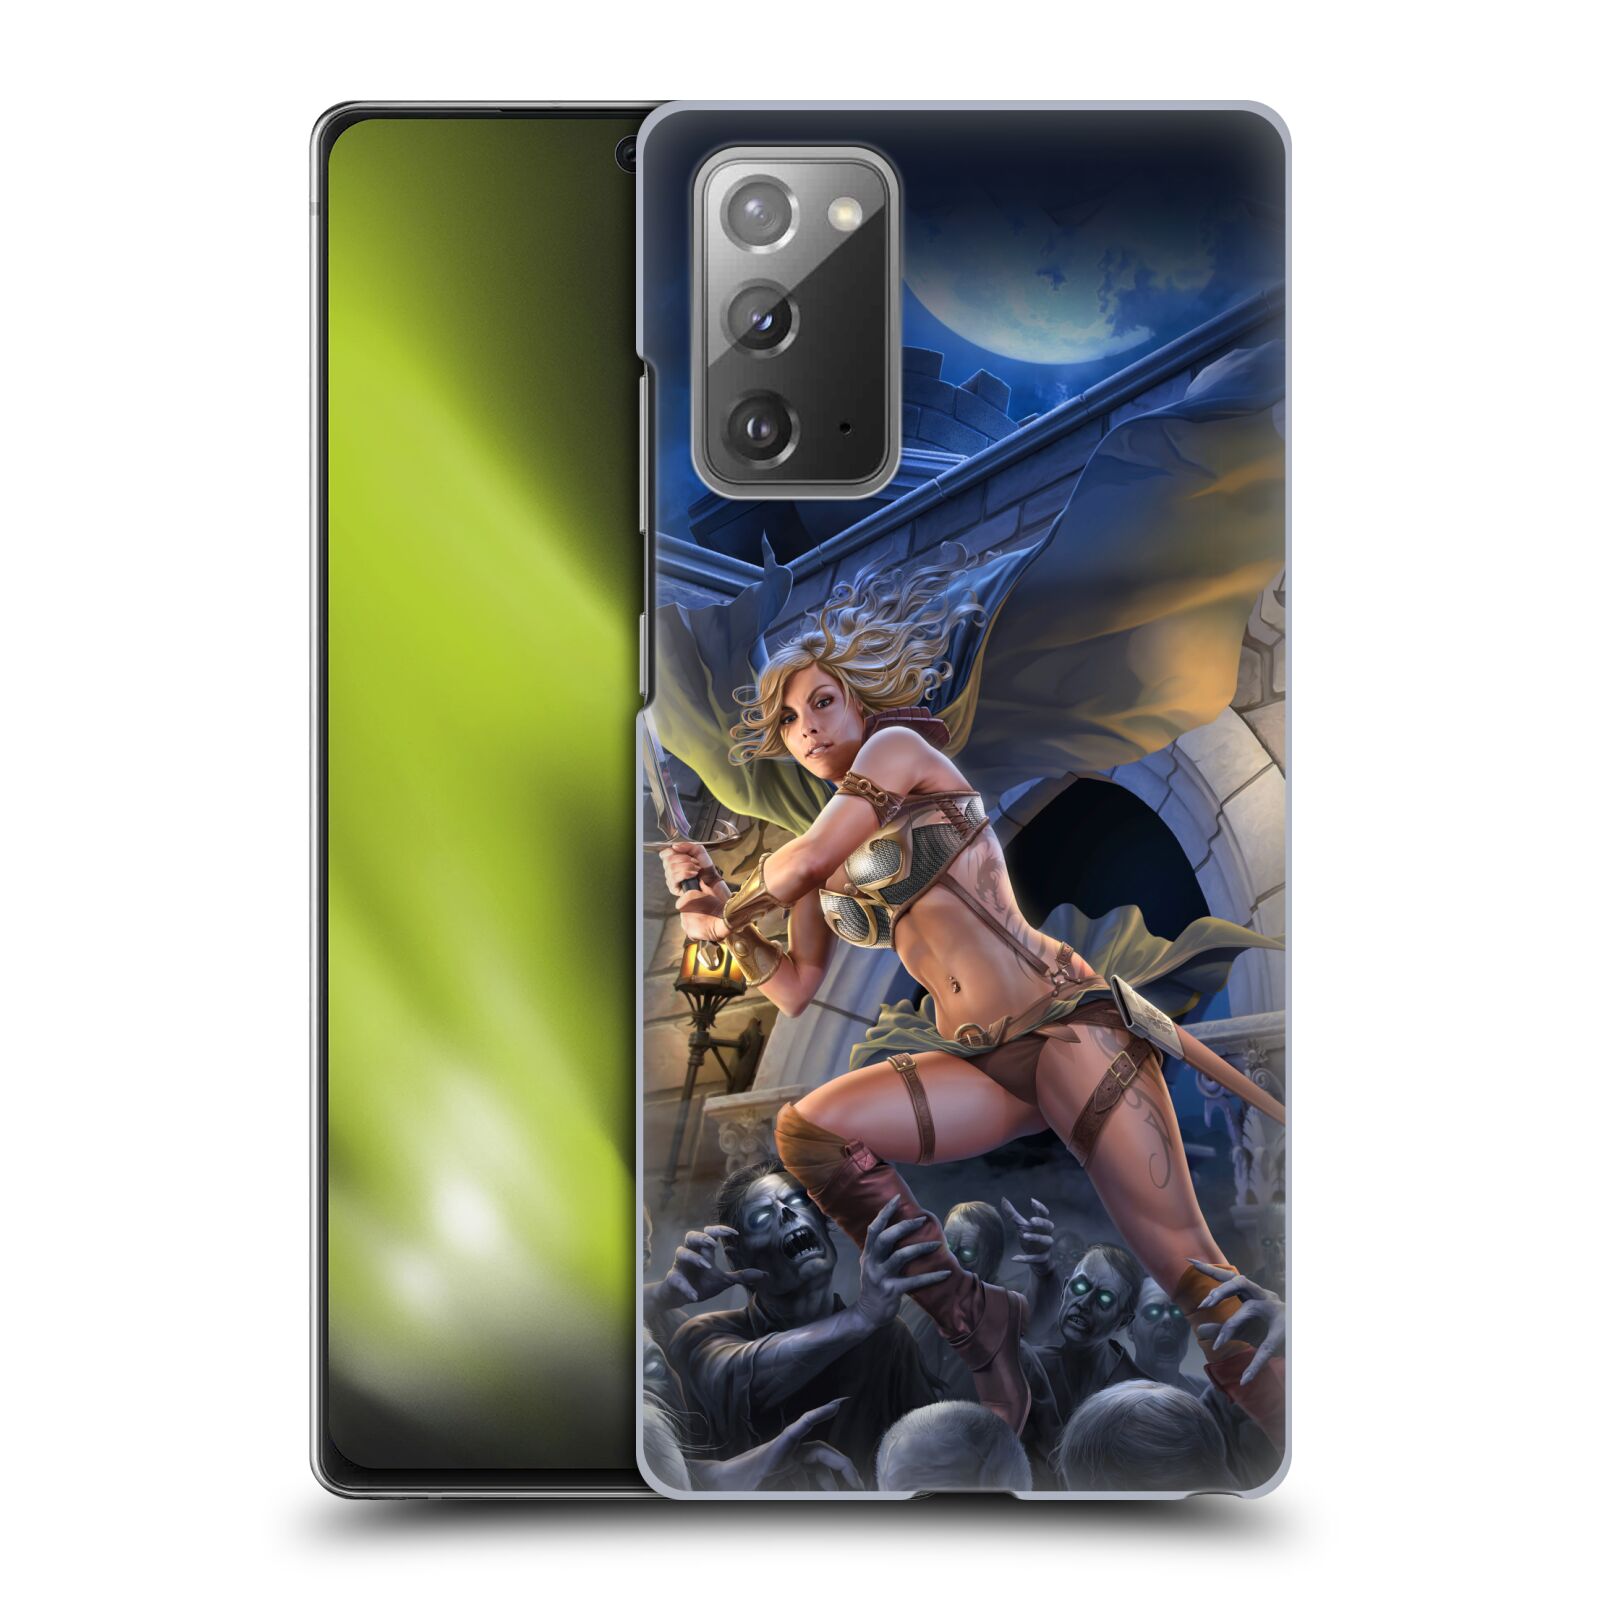 Pouzdro na mobil Samsung Galaxy Note 20 - HEAD CASE - Fantasy kresby Tom Wood - Princezna bojovnice a zombies